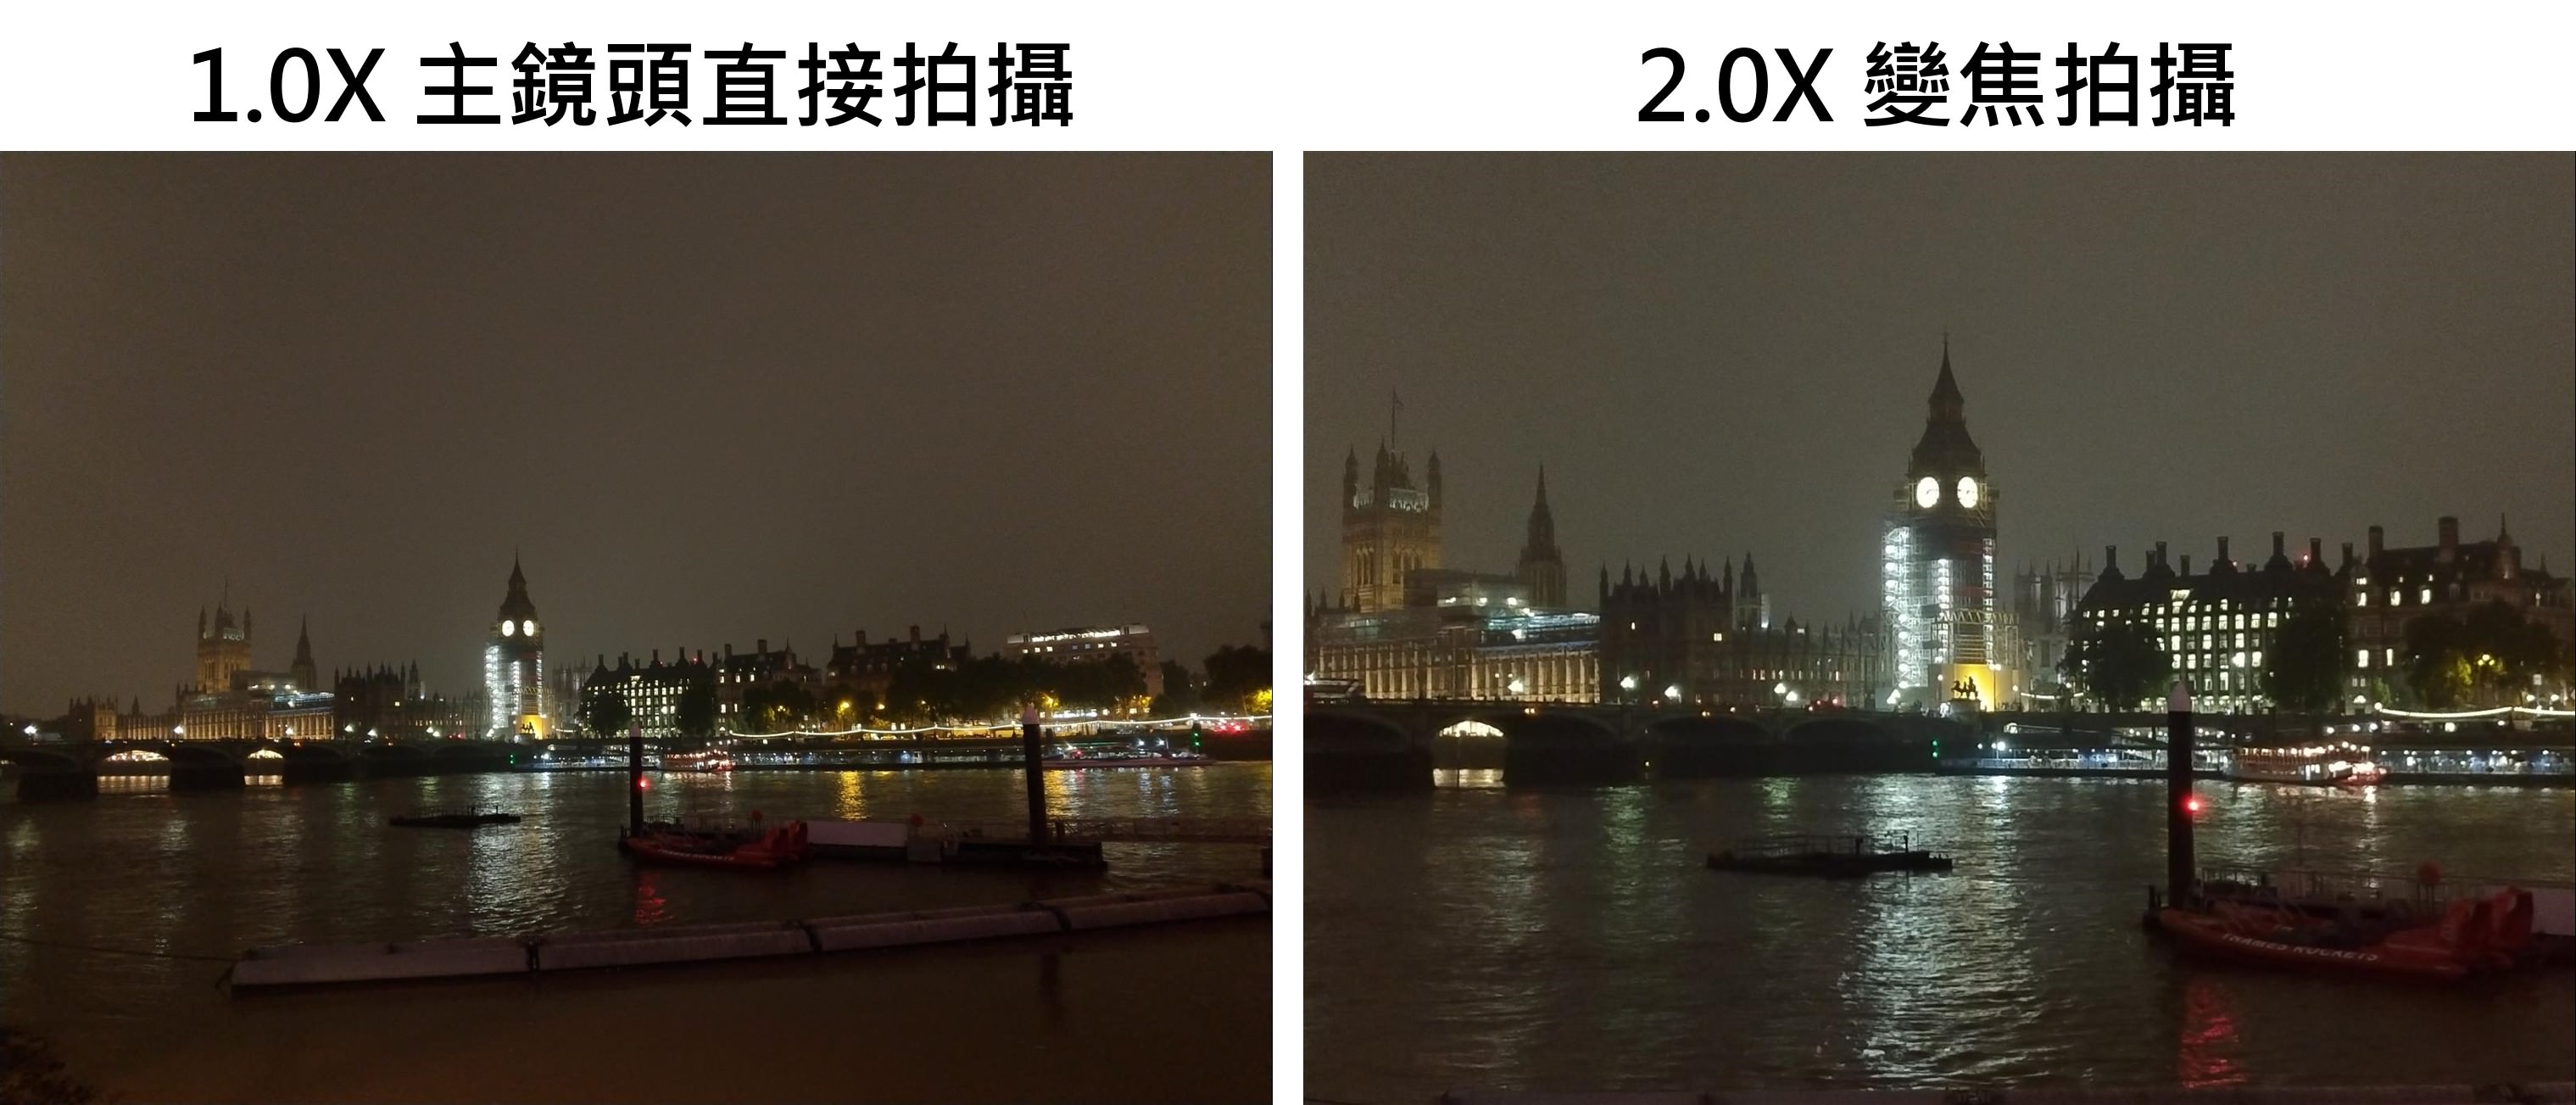 華碩 ZenFone 4 Pro 讓你愛上攝影 , 智慧雙鏡頭光學變焦好厲害